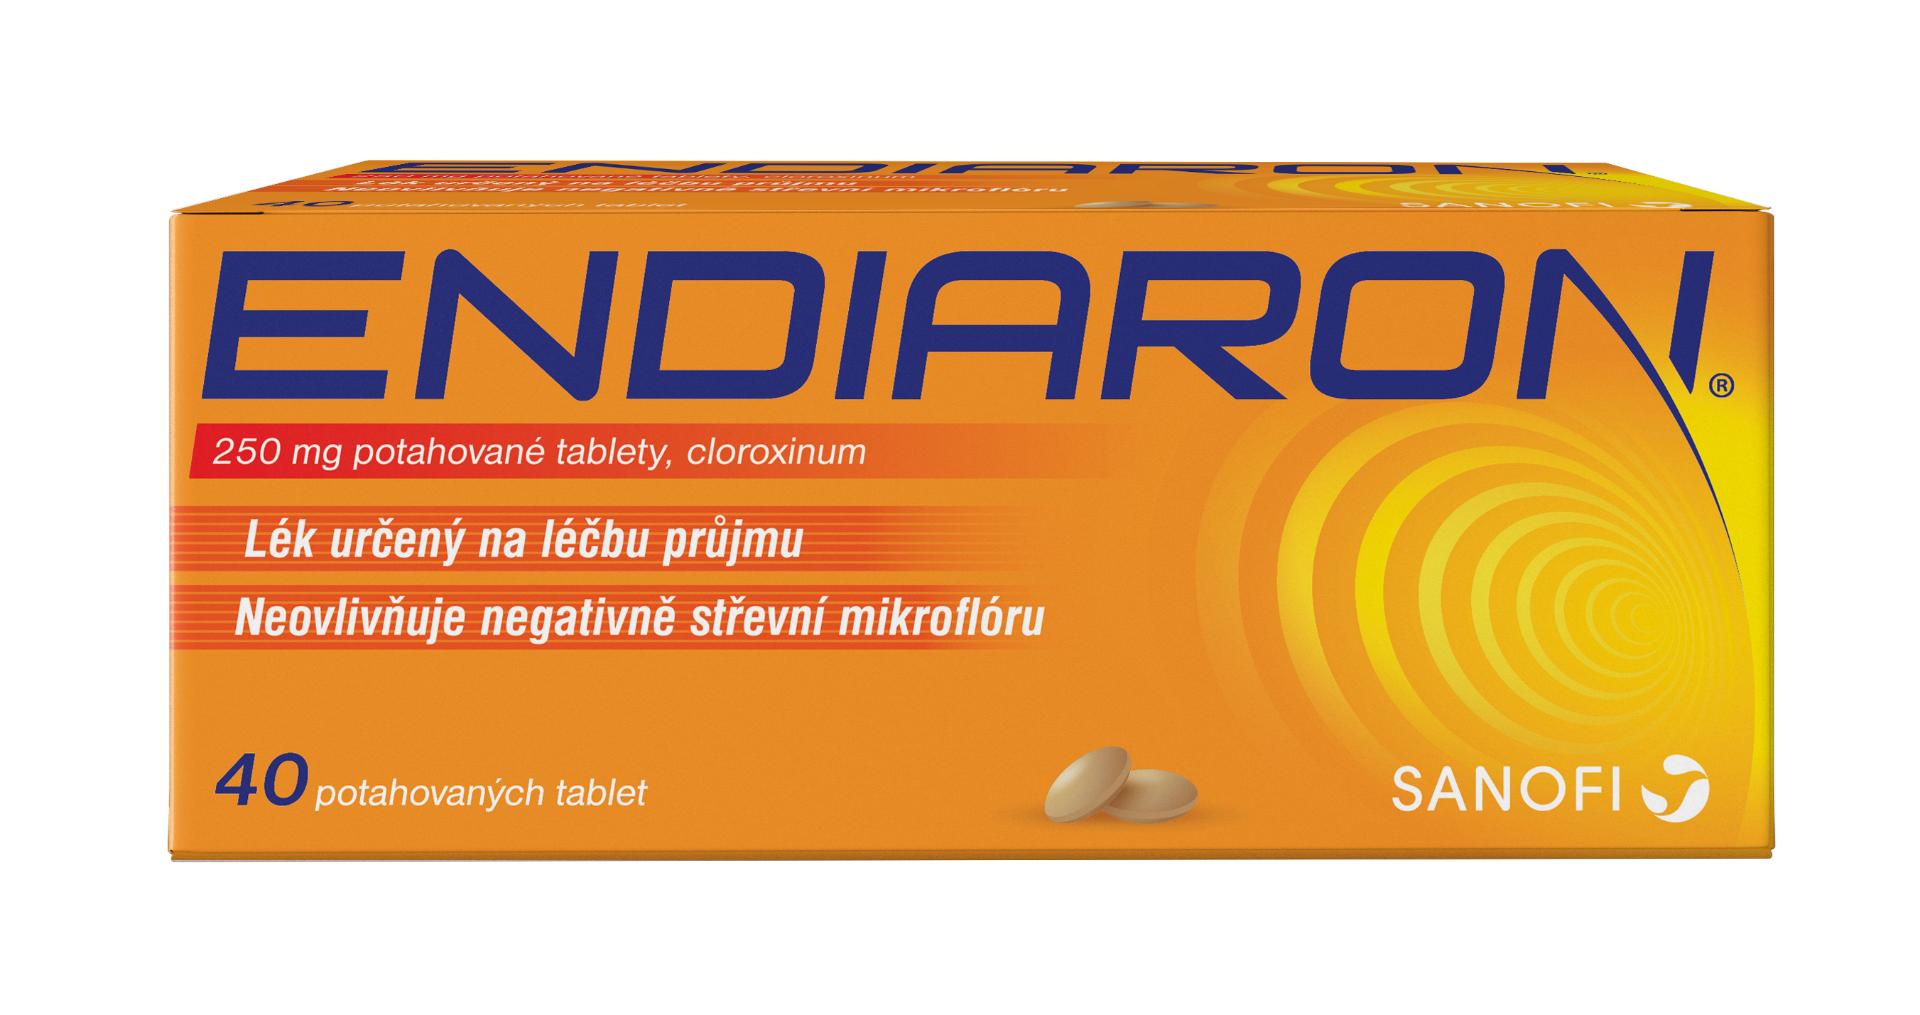 Endiaron 250 mg 40 tablet Endiaron